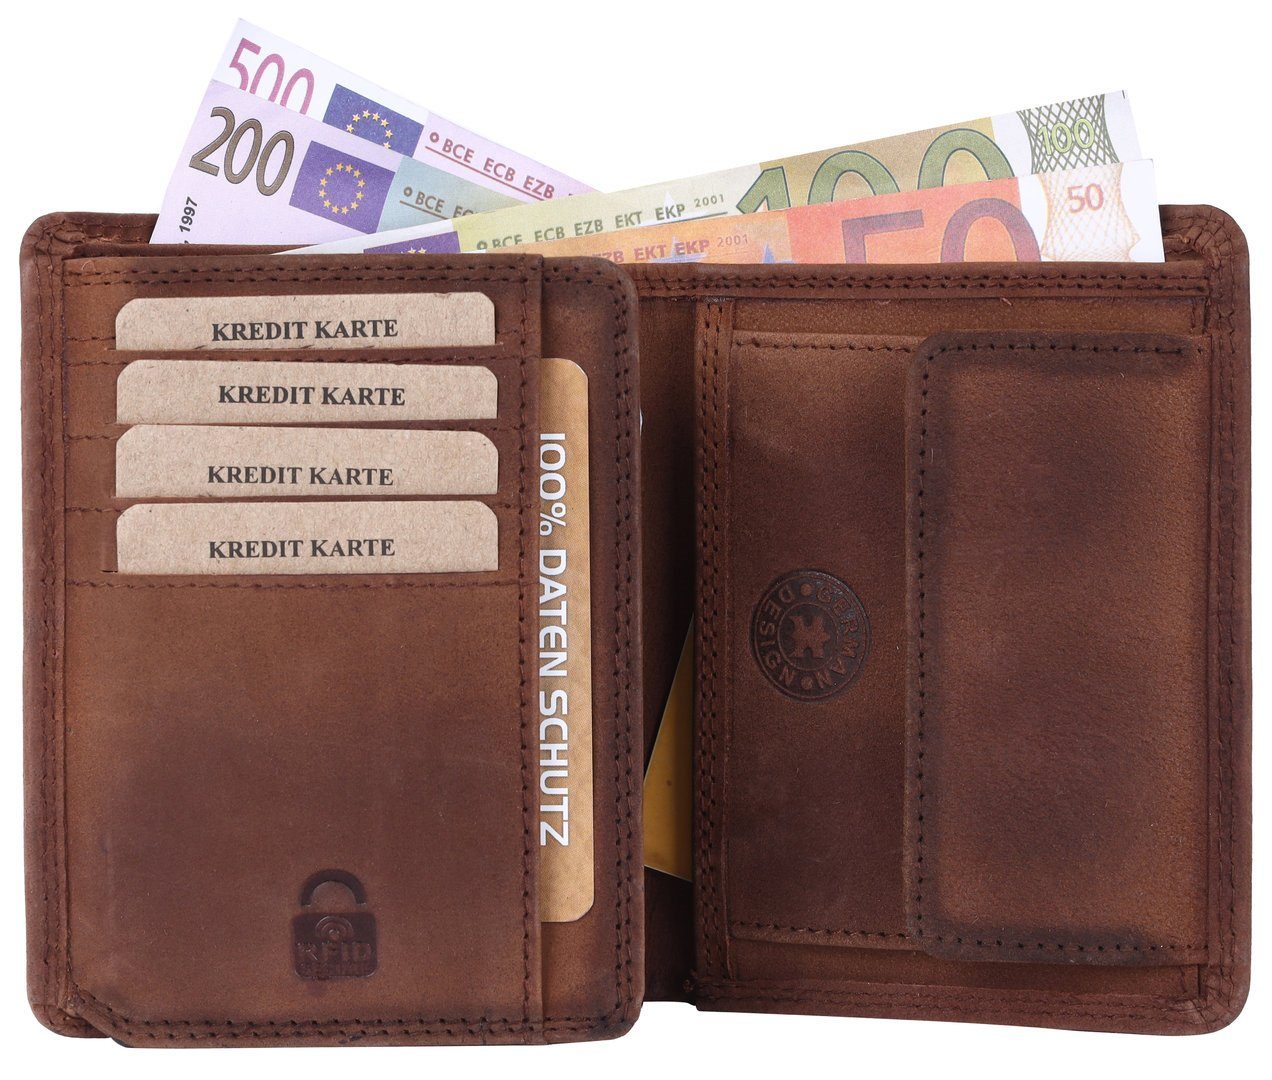 SHG Geldbörse Börse Herren RFID Männerbörse Büffelleder Lederbörse Münzfach mit Leder Kette Brieftasche mit Portemonnaie, Schutz